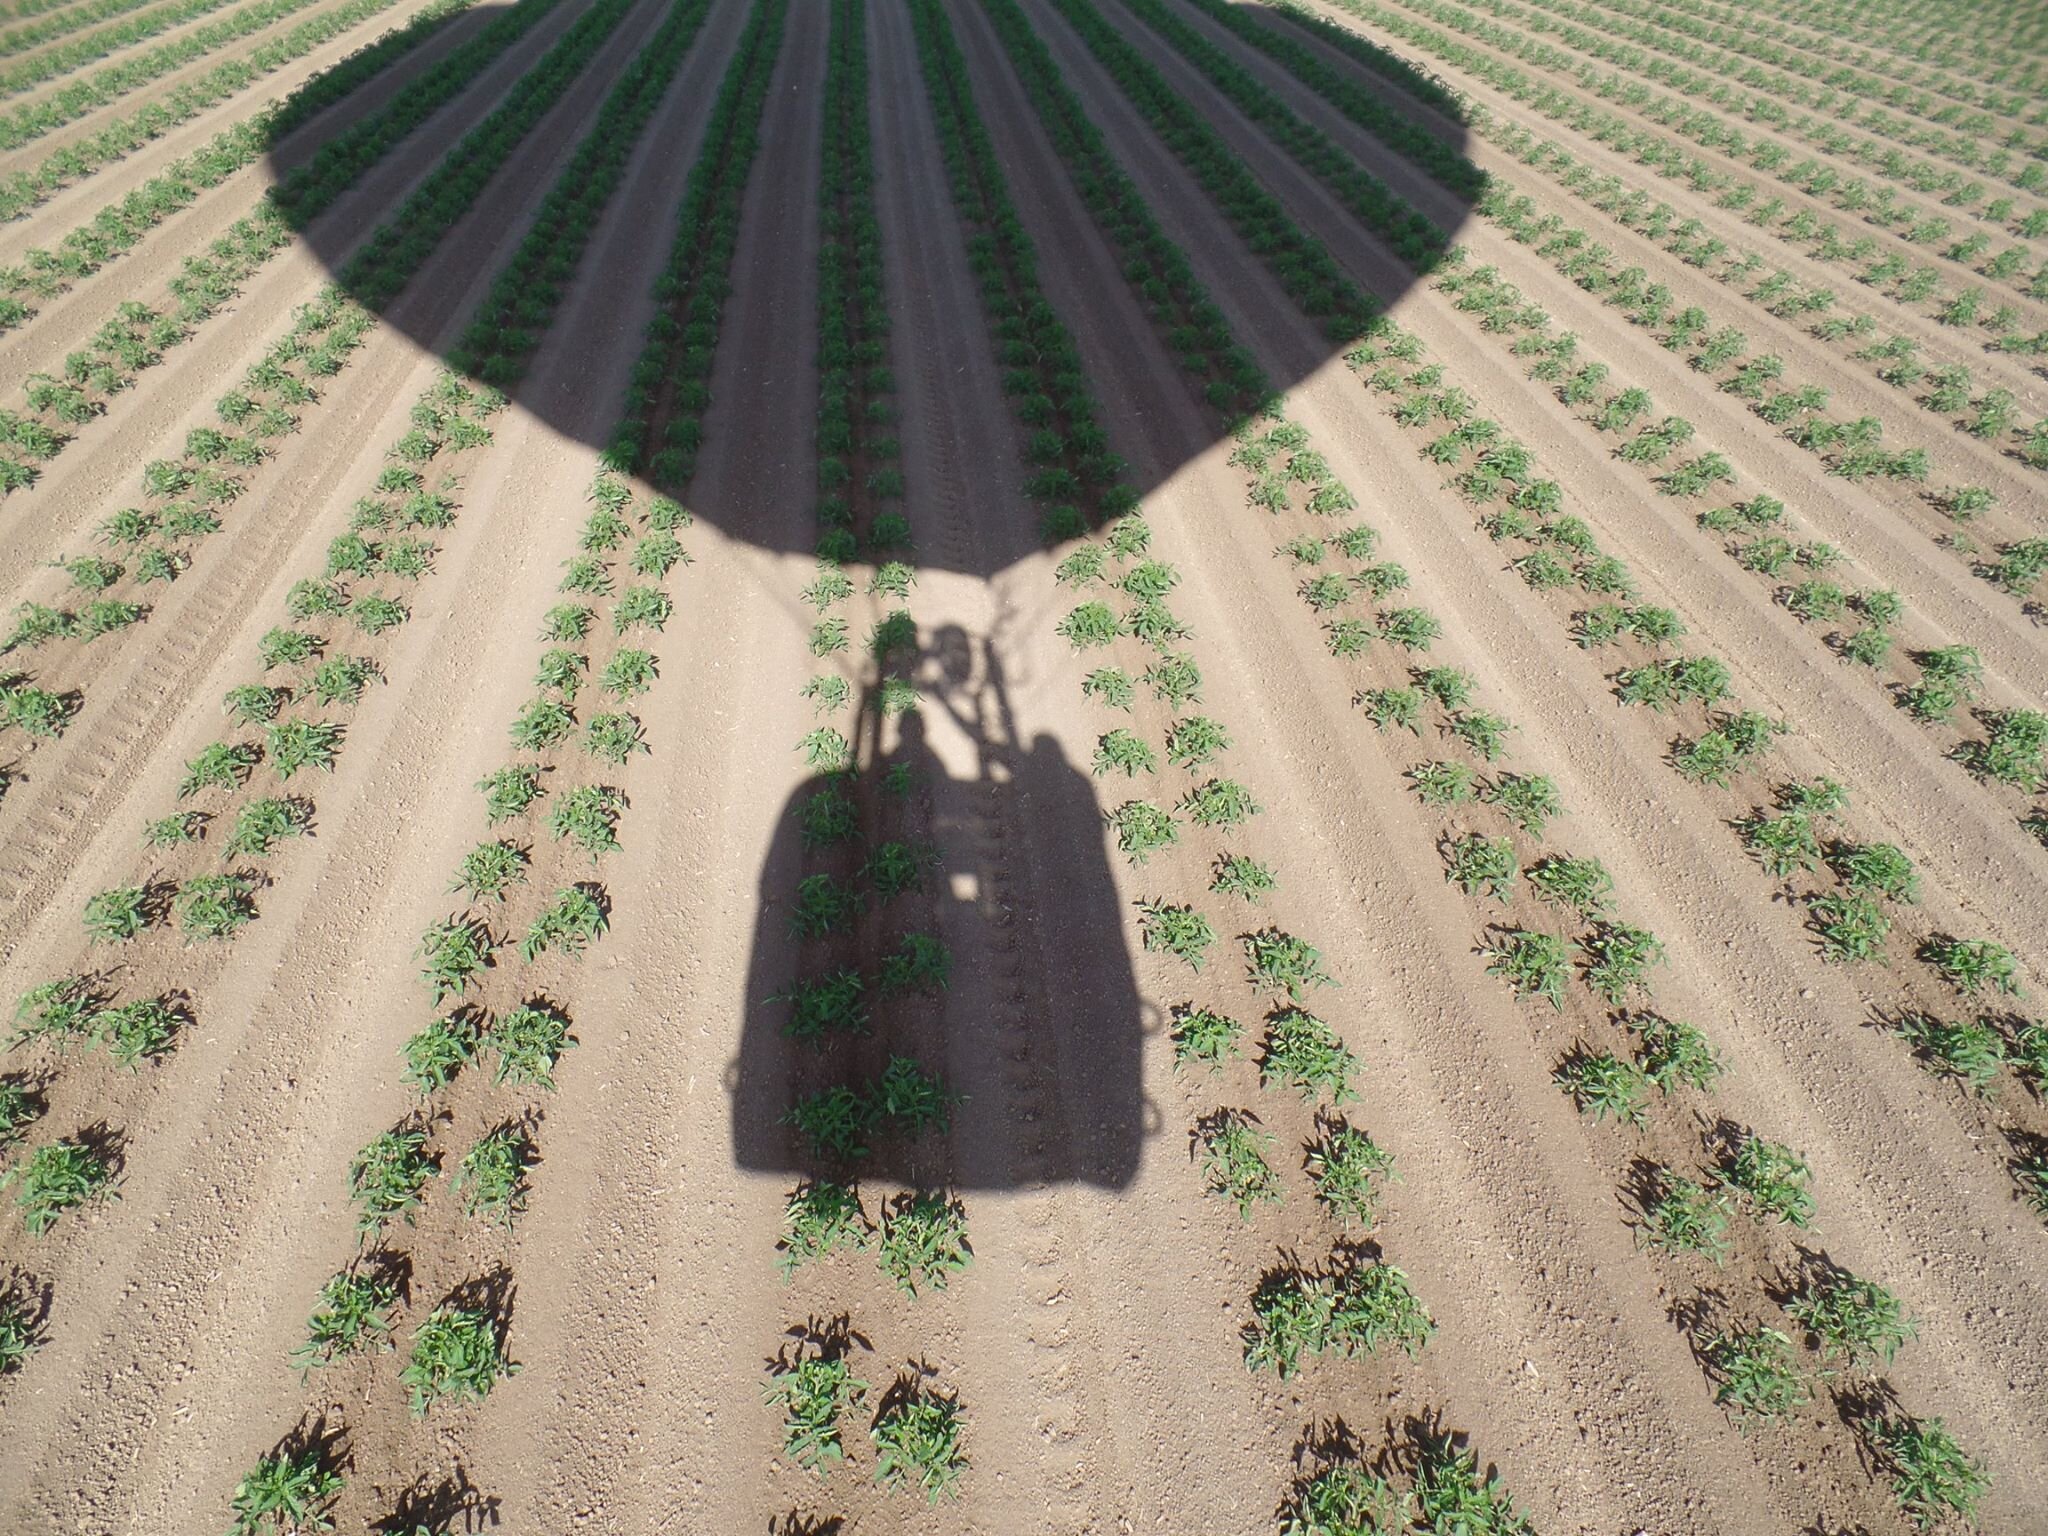 shadow over crops.jpeg